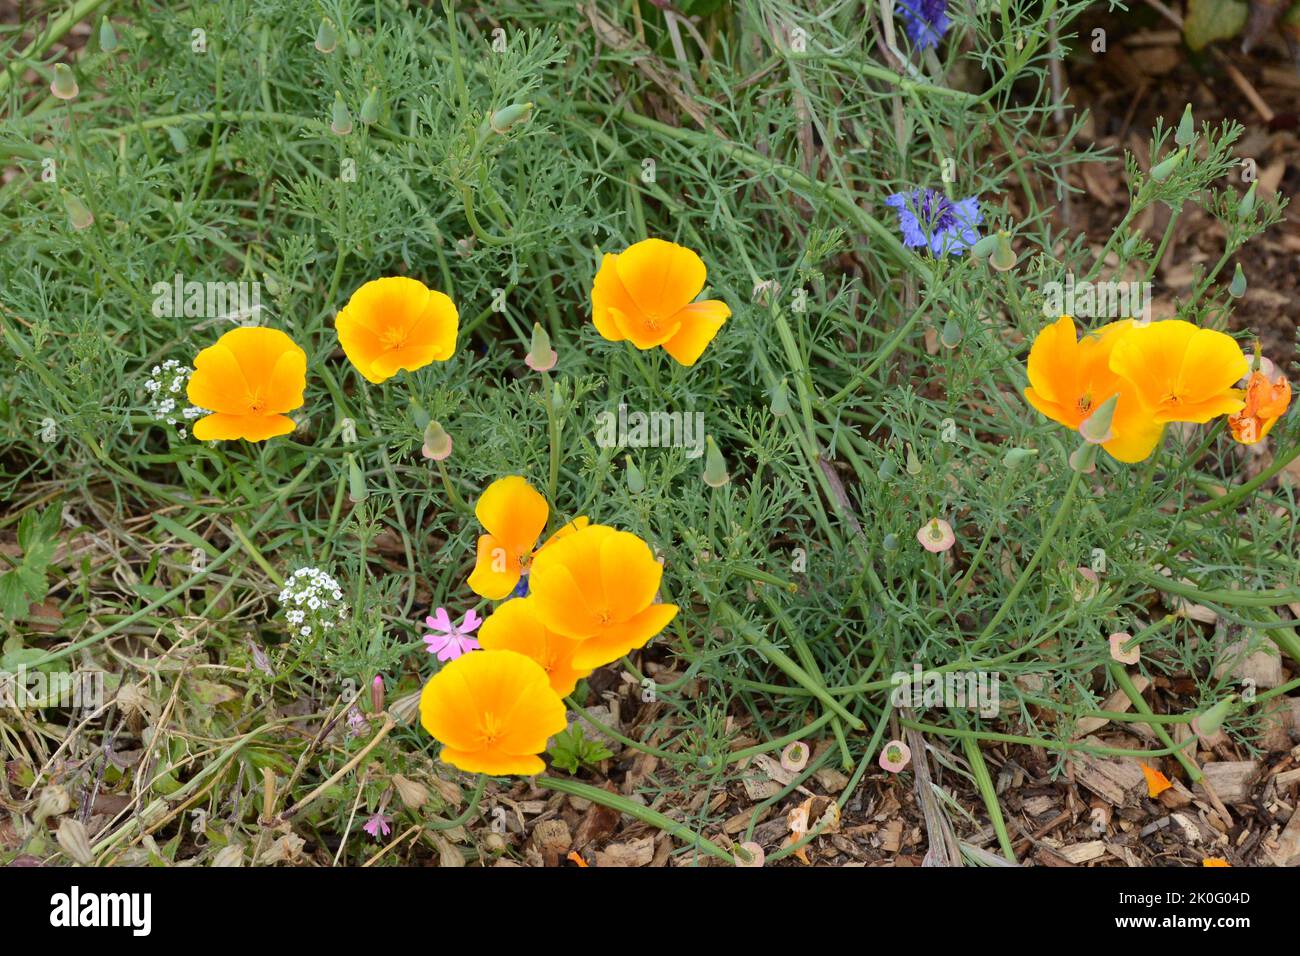 California Poppy (Eschscholzia california), blooming, open, in garden Stock Photo